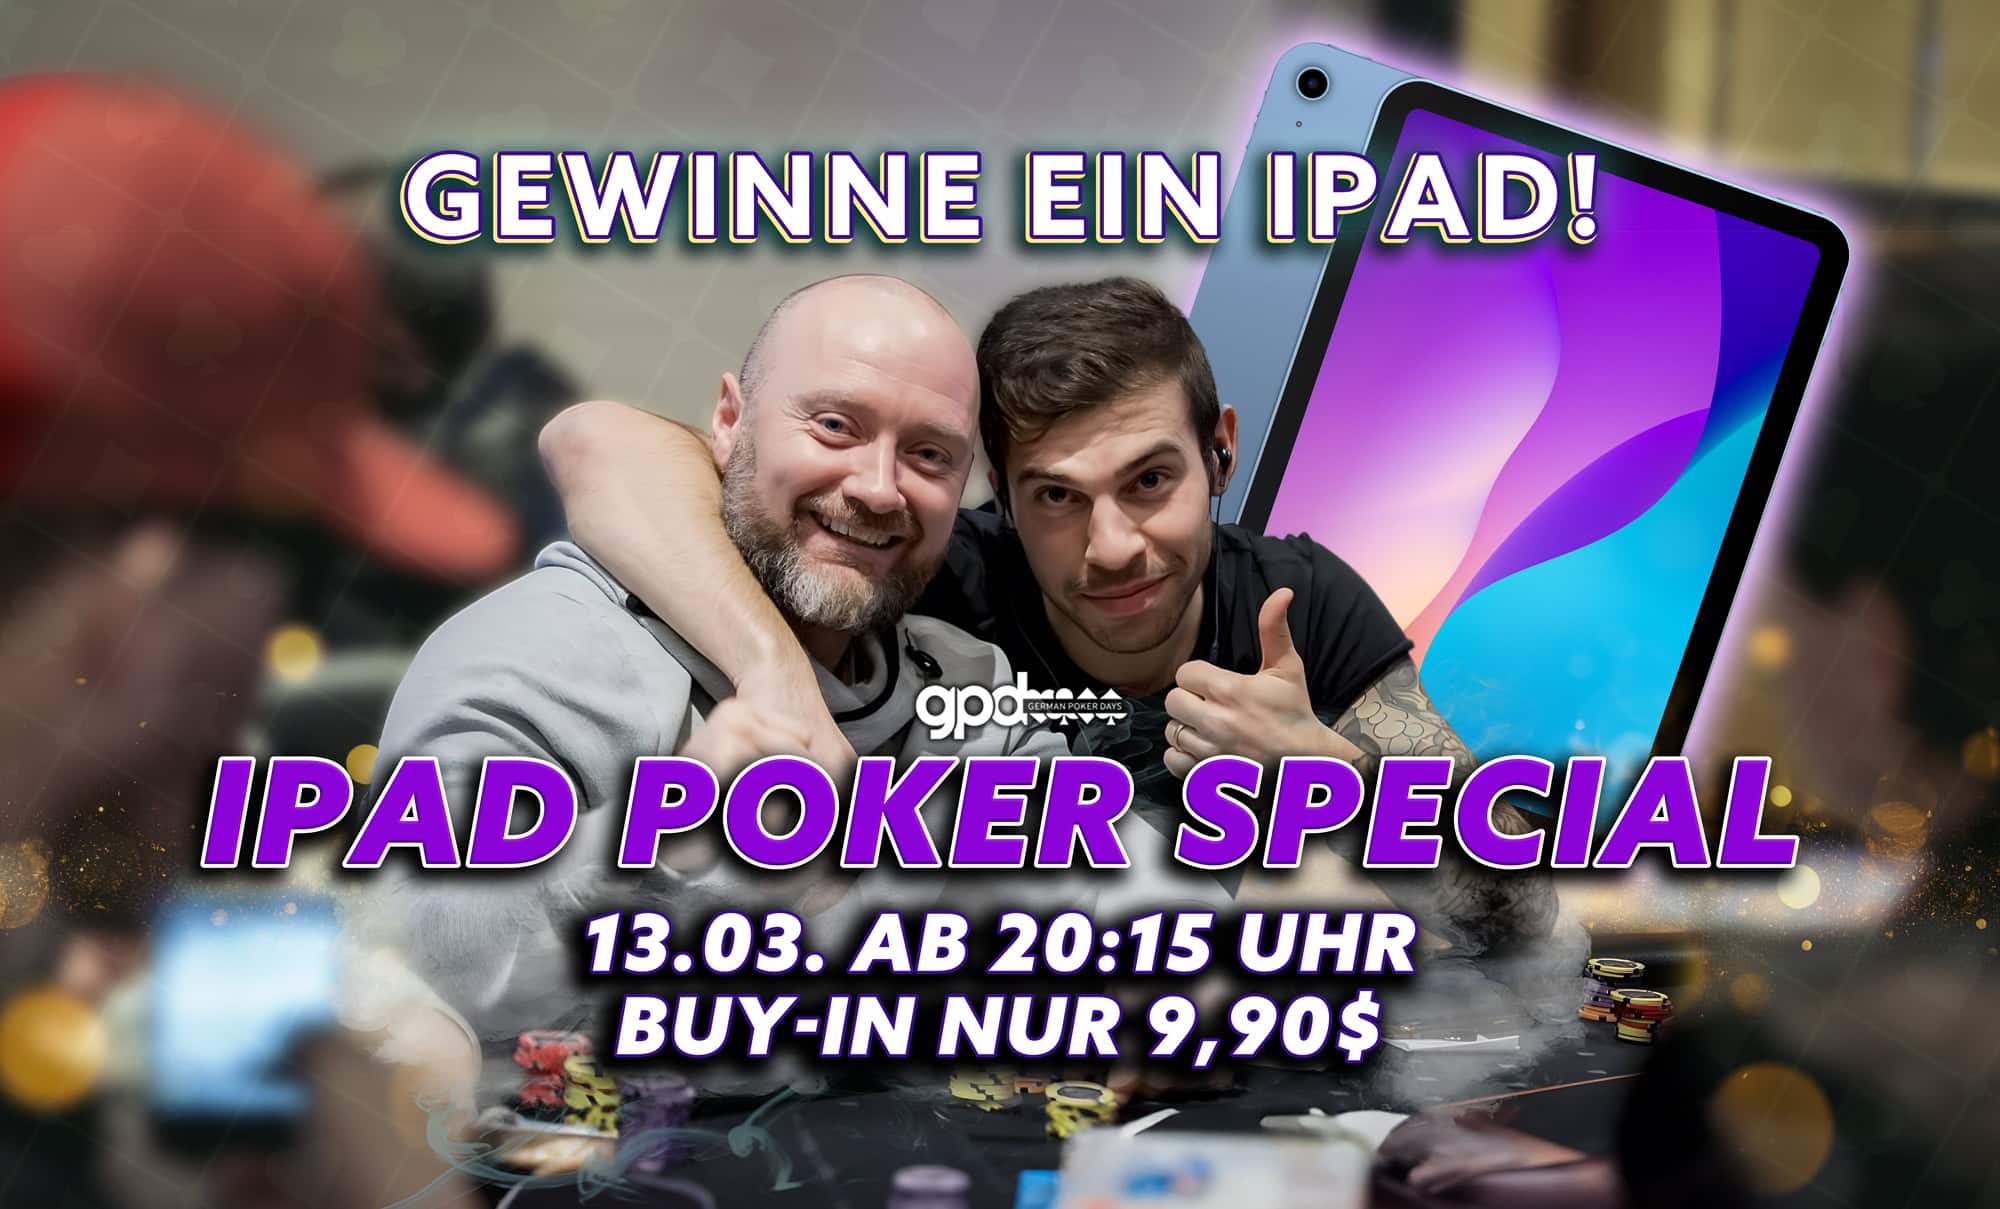 iPad Poker Special 13.03. – Sichere dir ein nagelneues iPad